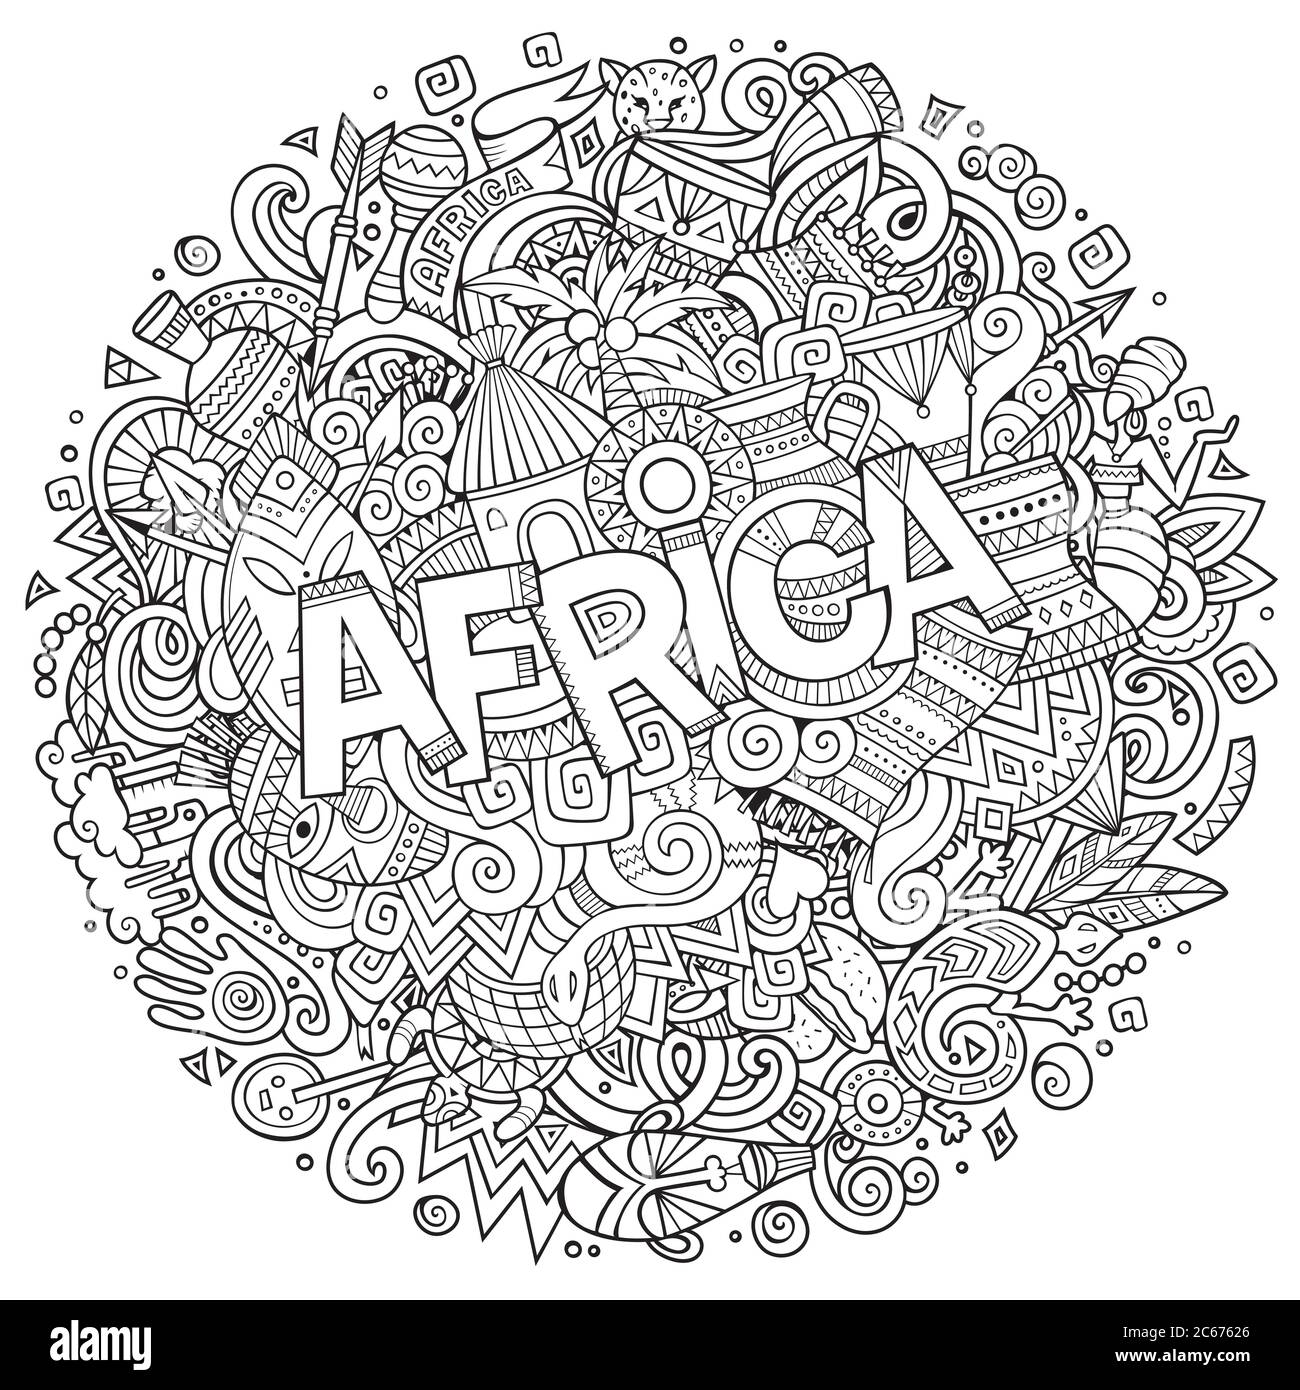 Dessin animé adorable gribouillages dessin main illustration africaine. Illustration de Vecteur